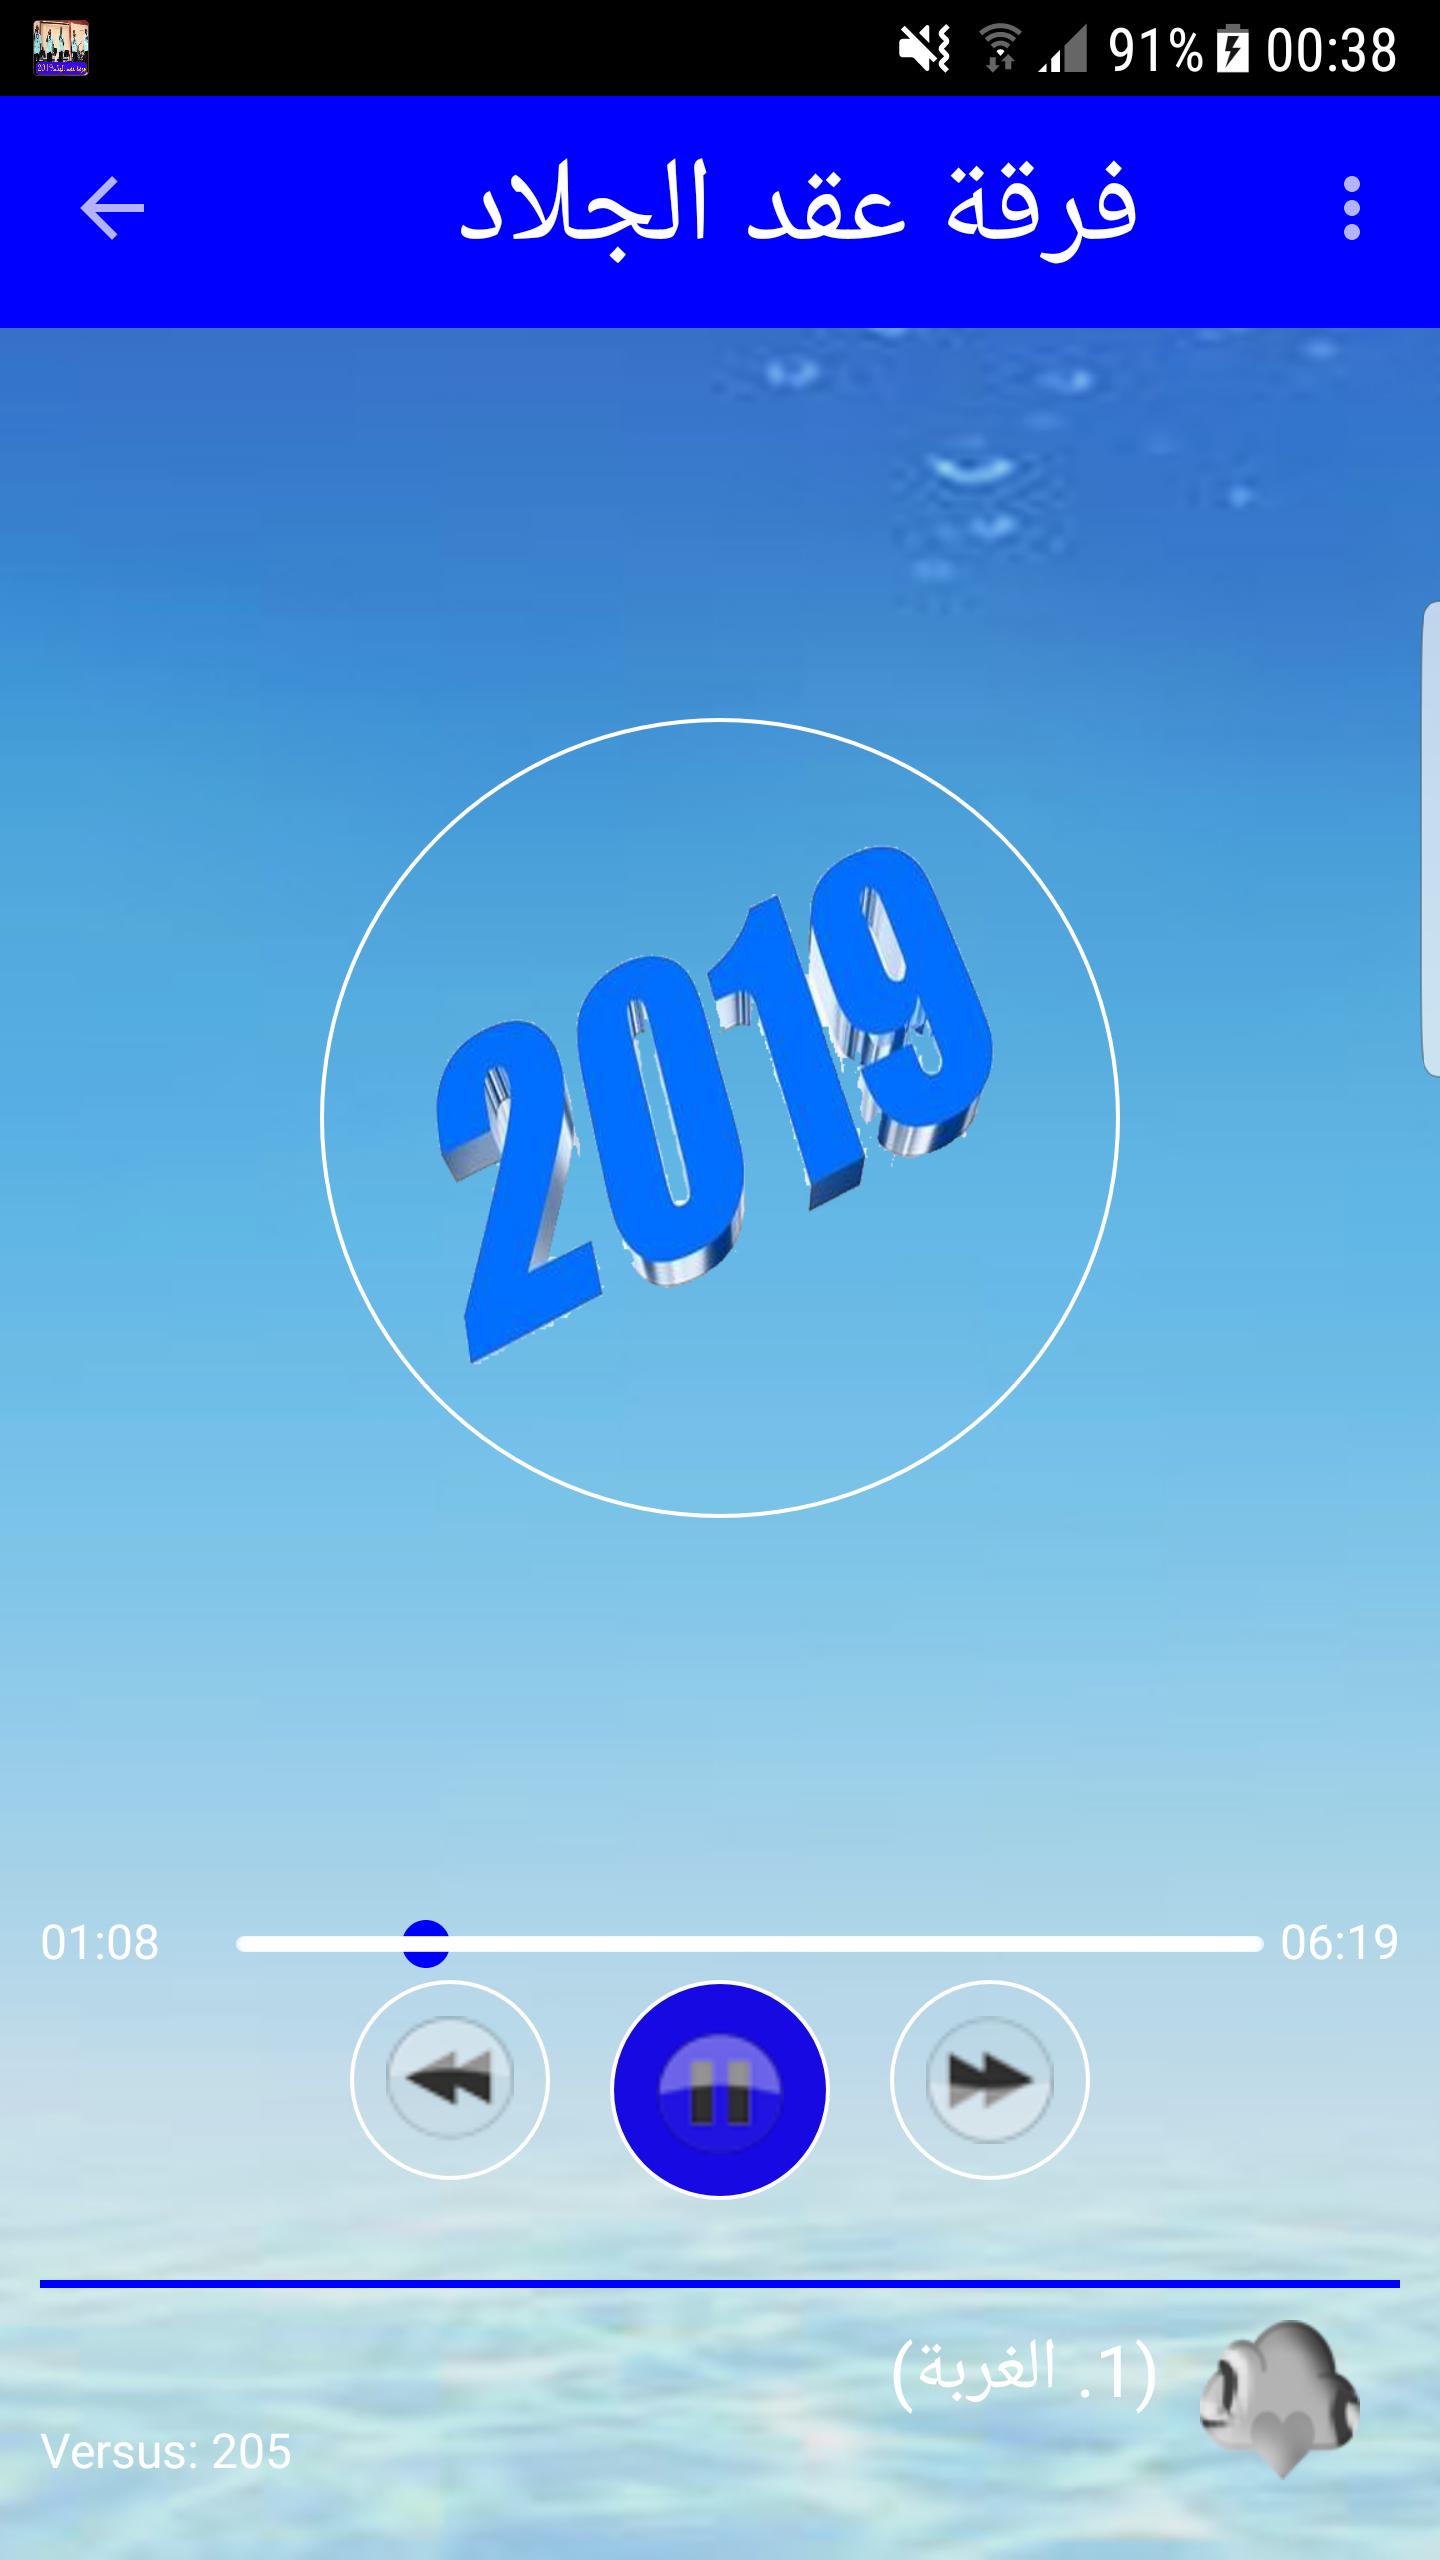 اغاني فرقة عقد الجلادد 2019 بدون نت-MP3 el jallade APK voor Android Download